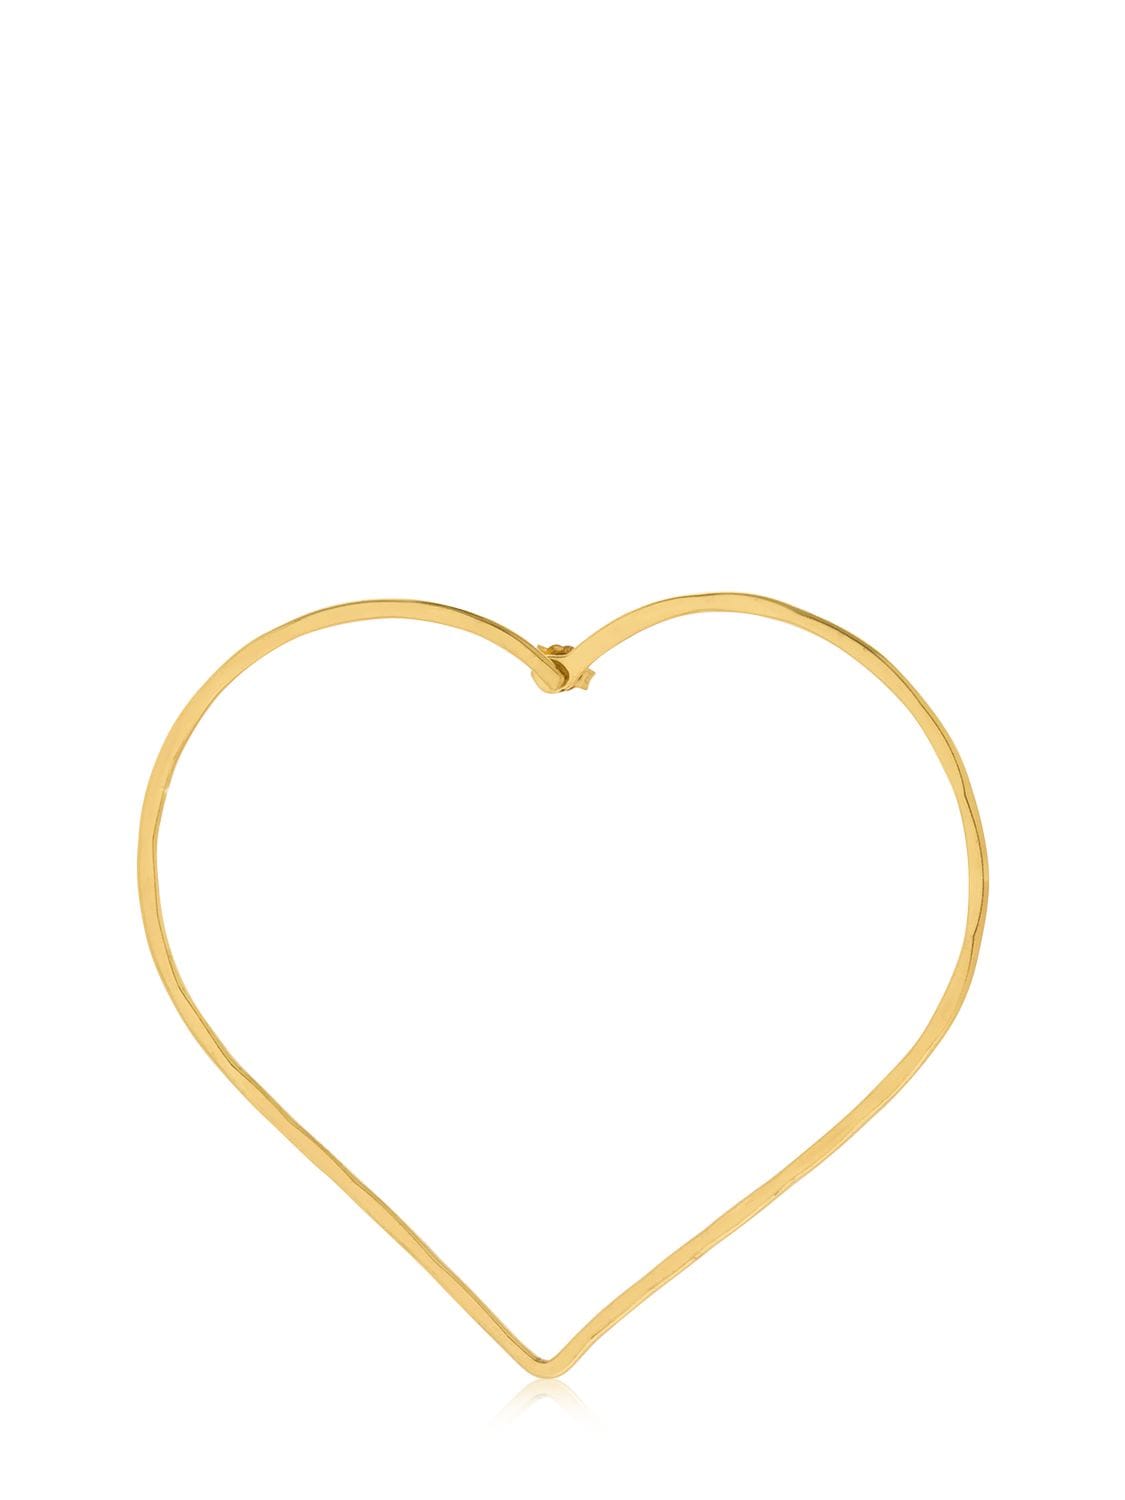 Seeme Altea 8cm Heart Mono Earring In Gold